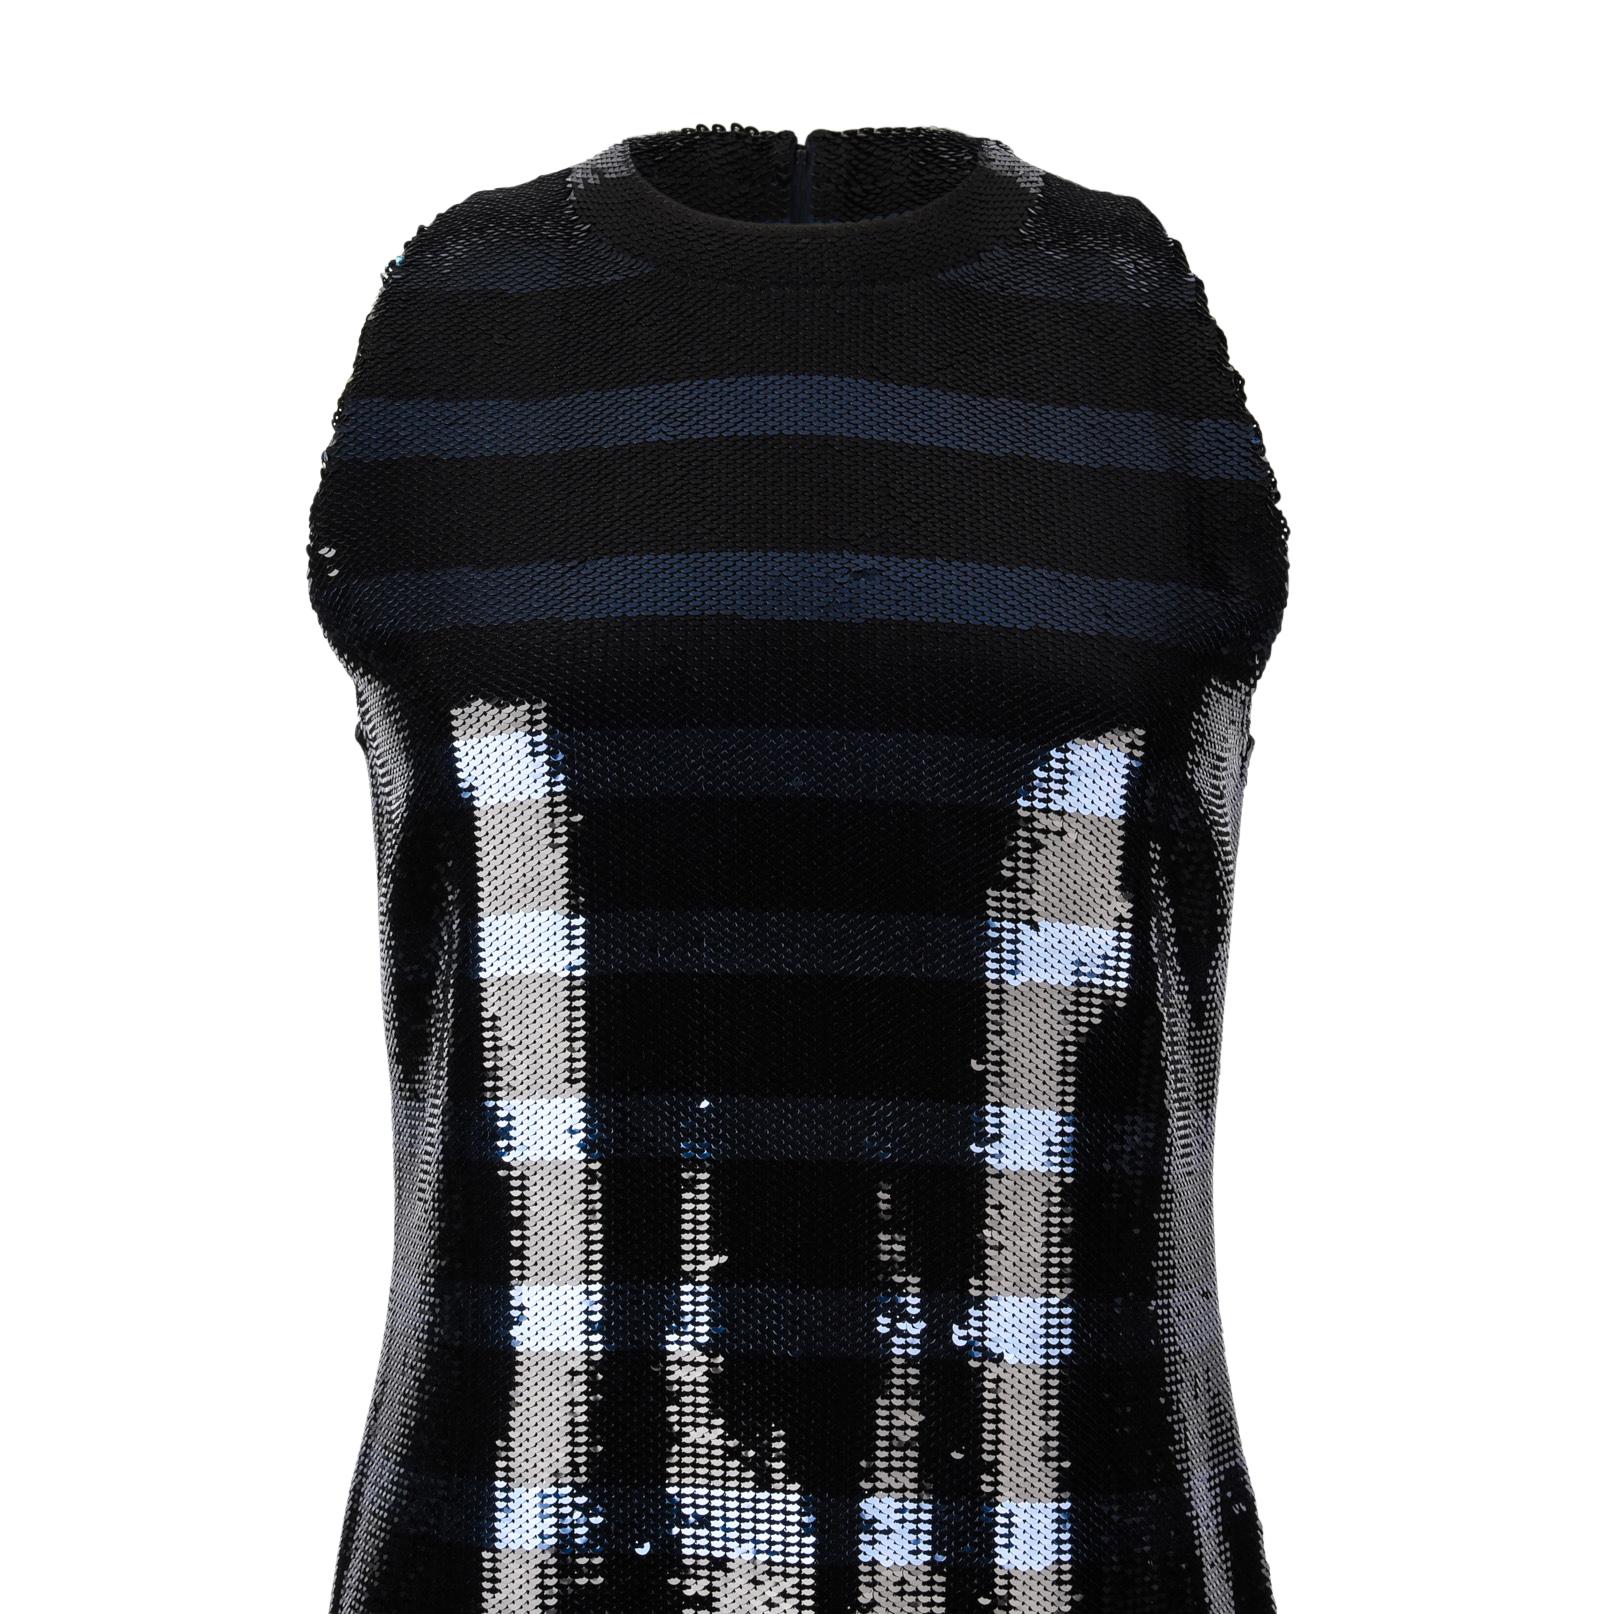 Christian Dior Dress Striped Sequin Embellished Navy / Black 6 6